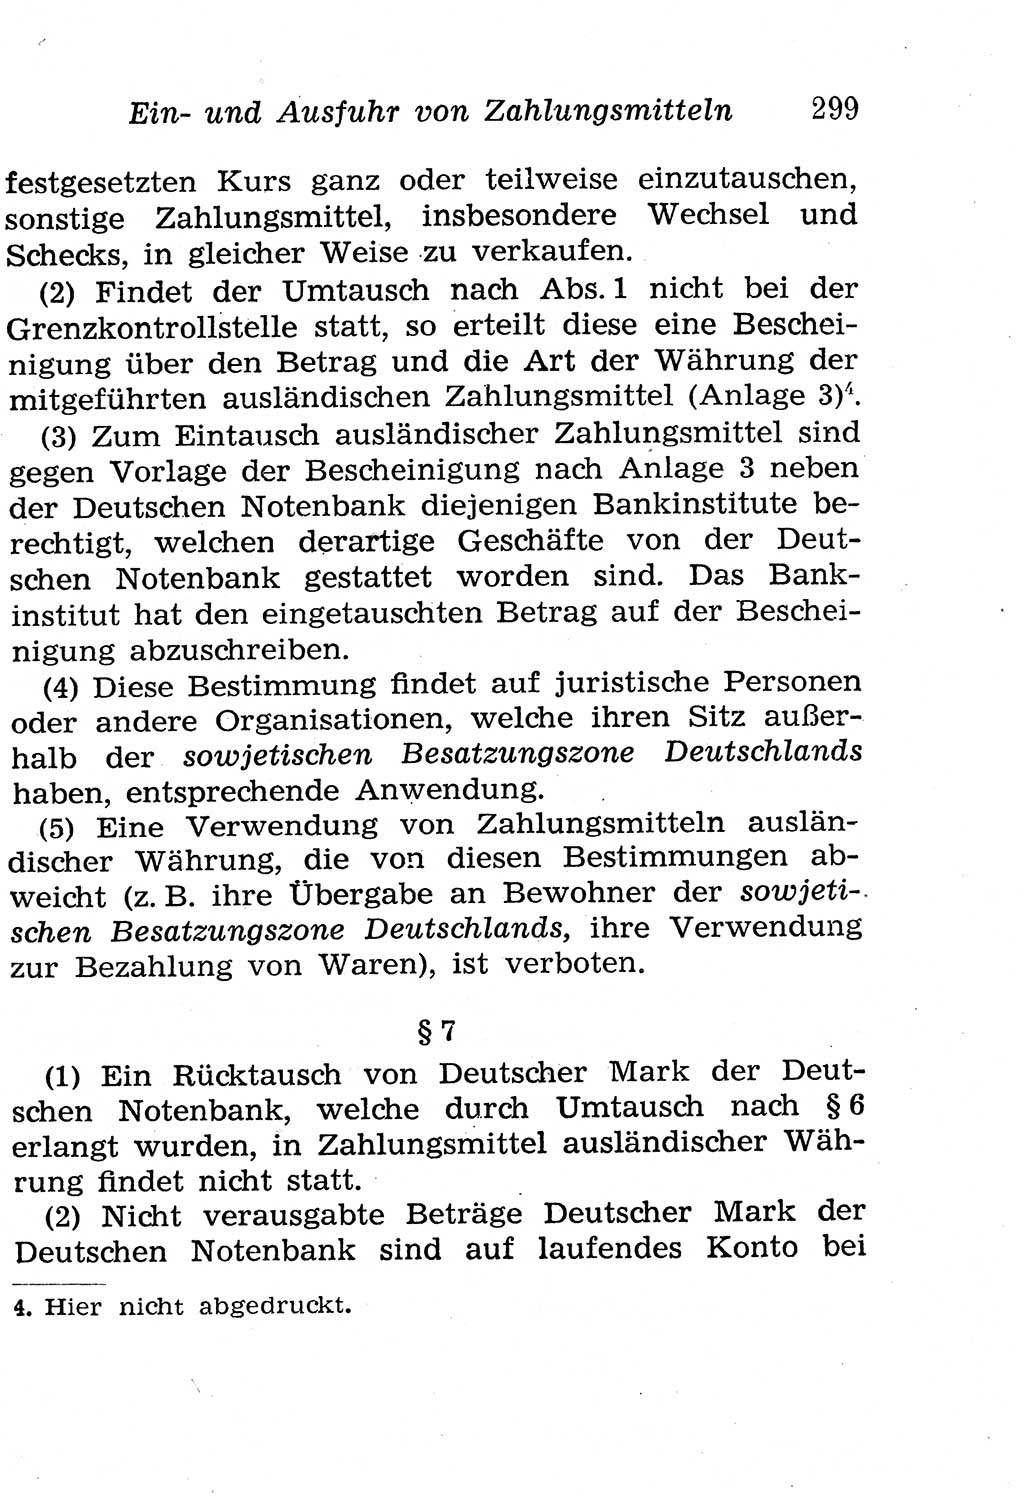 Strafgesetzbuch (StGB) und andere Strafgesetze [Deutsche Demokratische Republik (DDR)] 1958, Seite 299 (StGB Strafges. DDR 1958, S. 299)